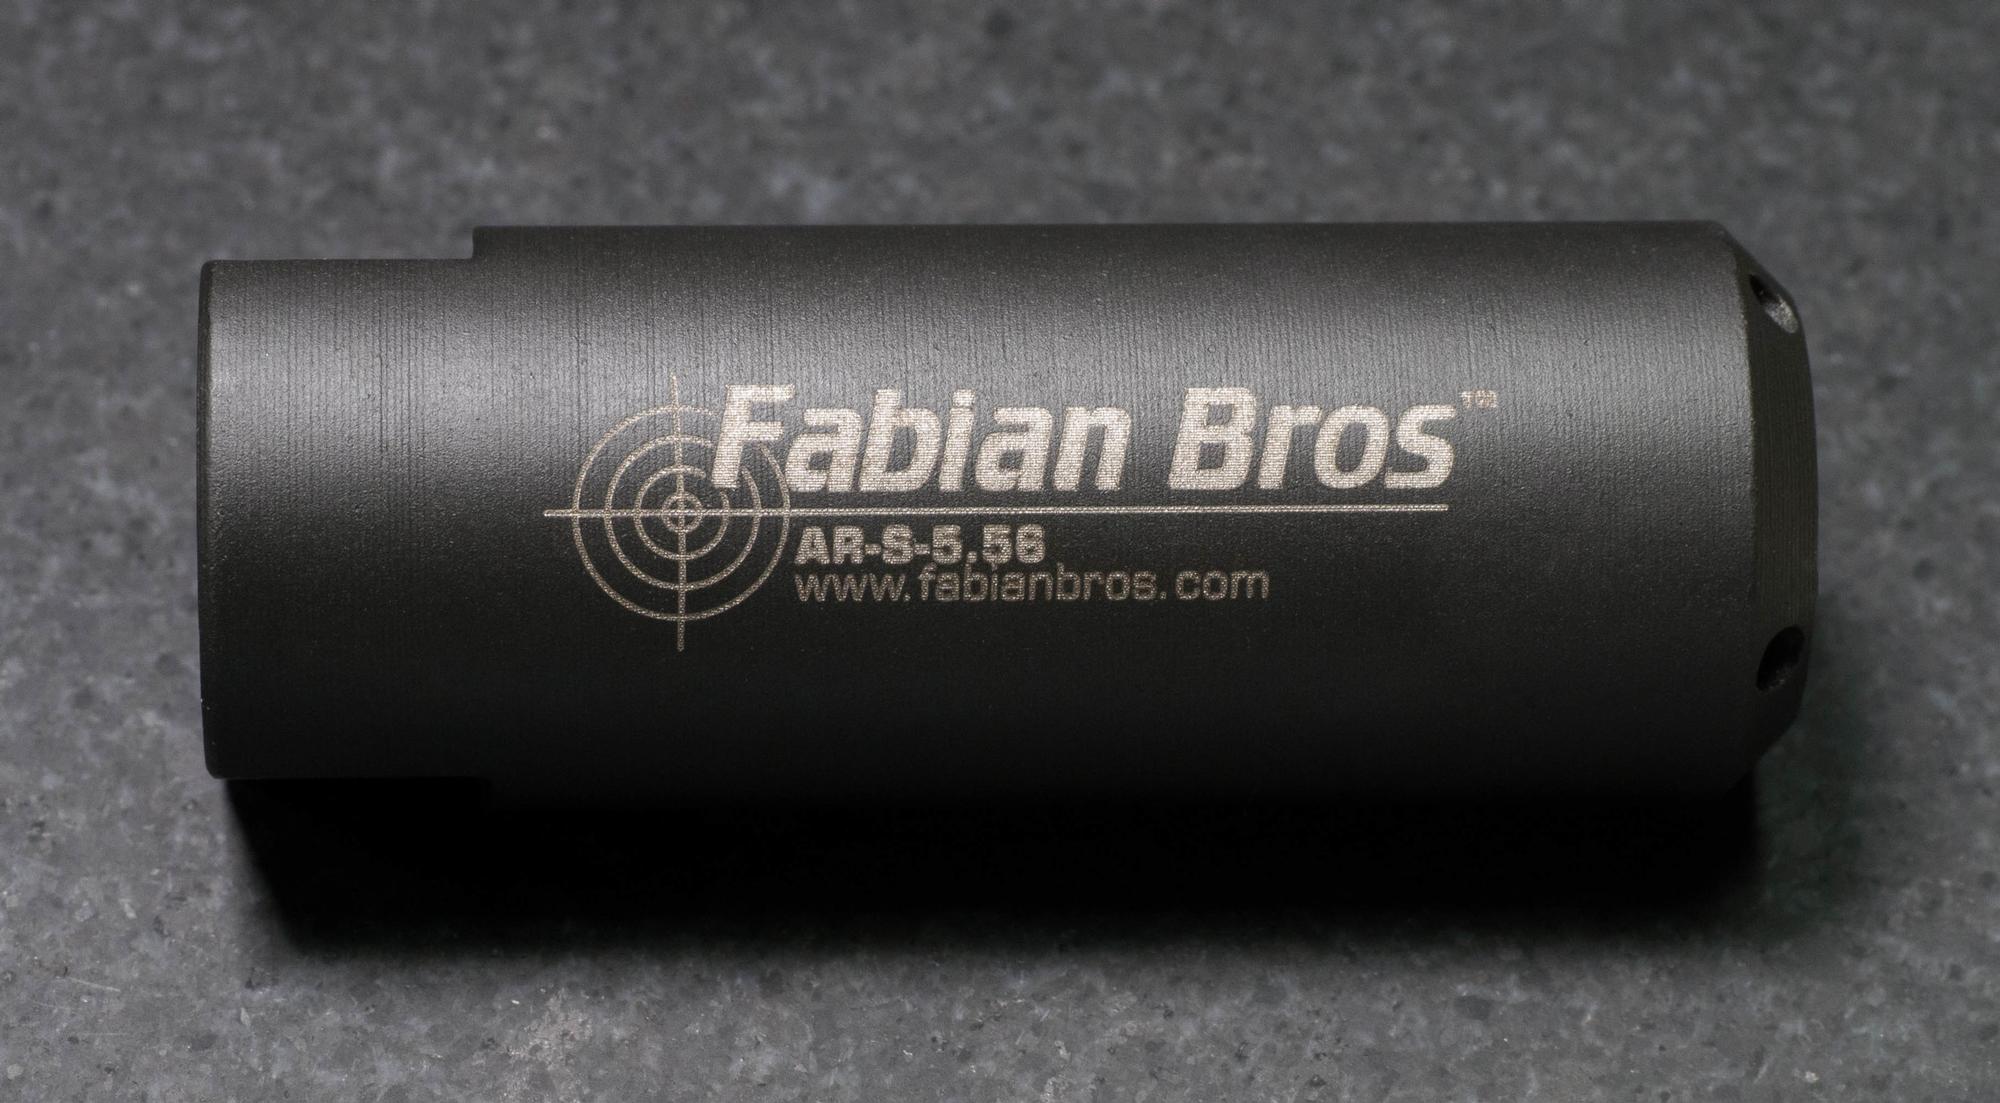  Fabian Bros Ar-S-5.56 Muzzle Stabilizer